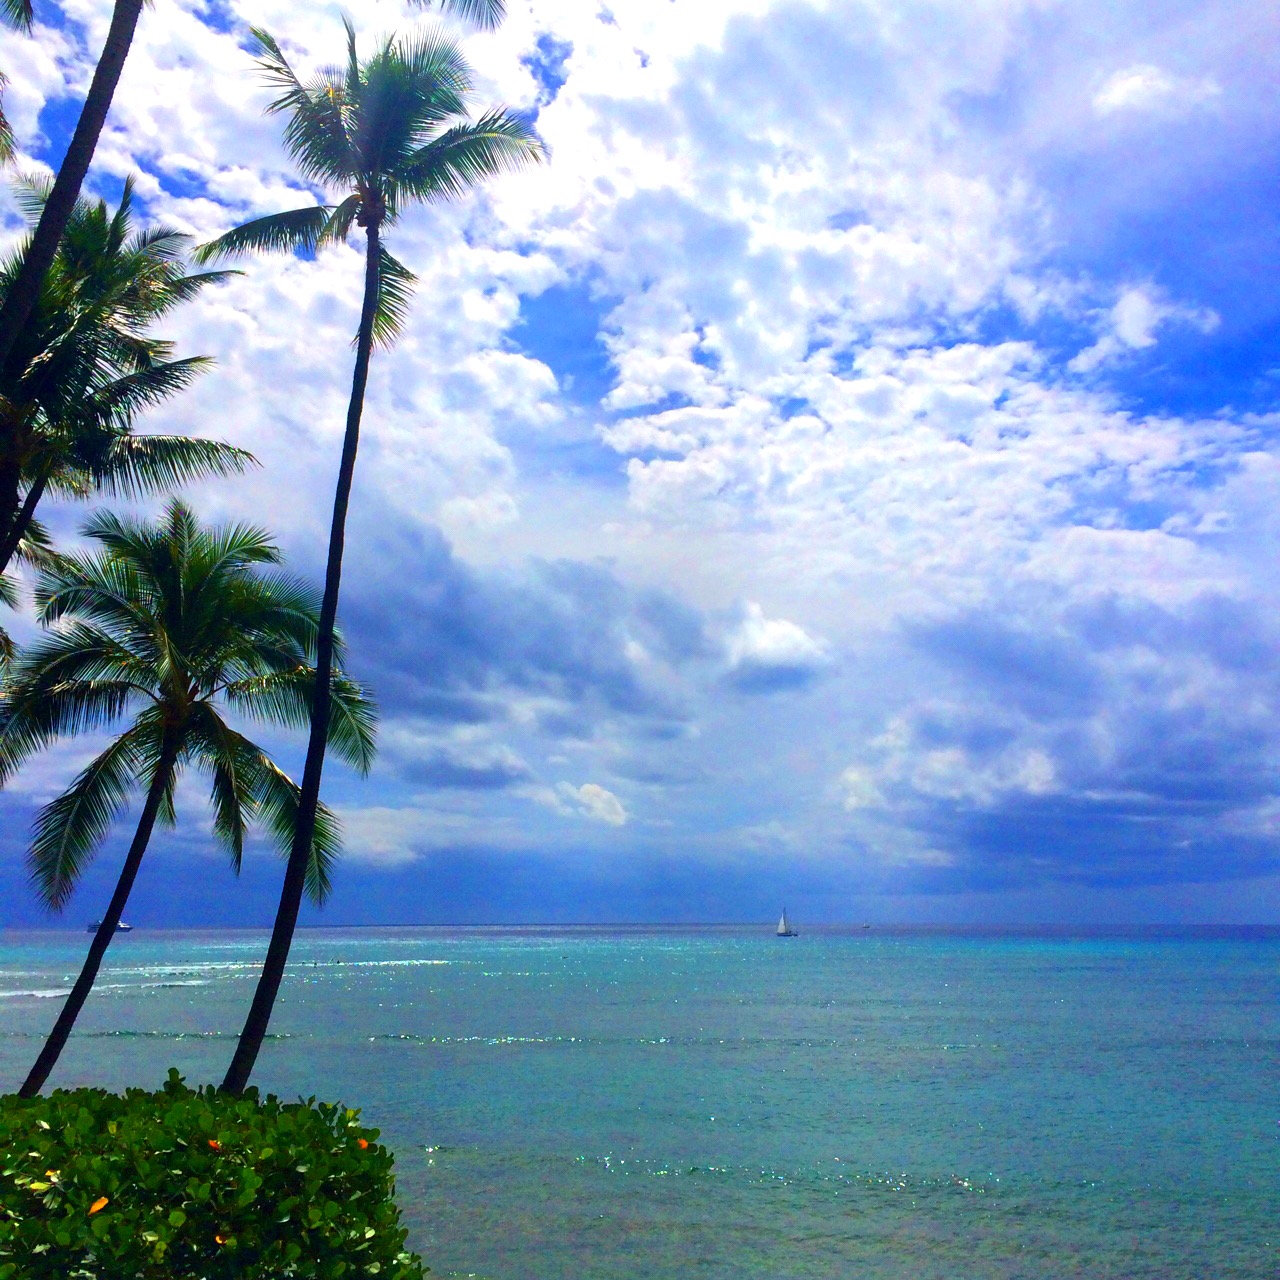 エレガントなリゾートハワイスタイルを楽しめる マリーナ ハワイ の魅力 たびこふれ